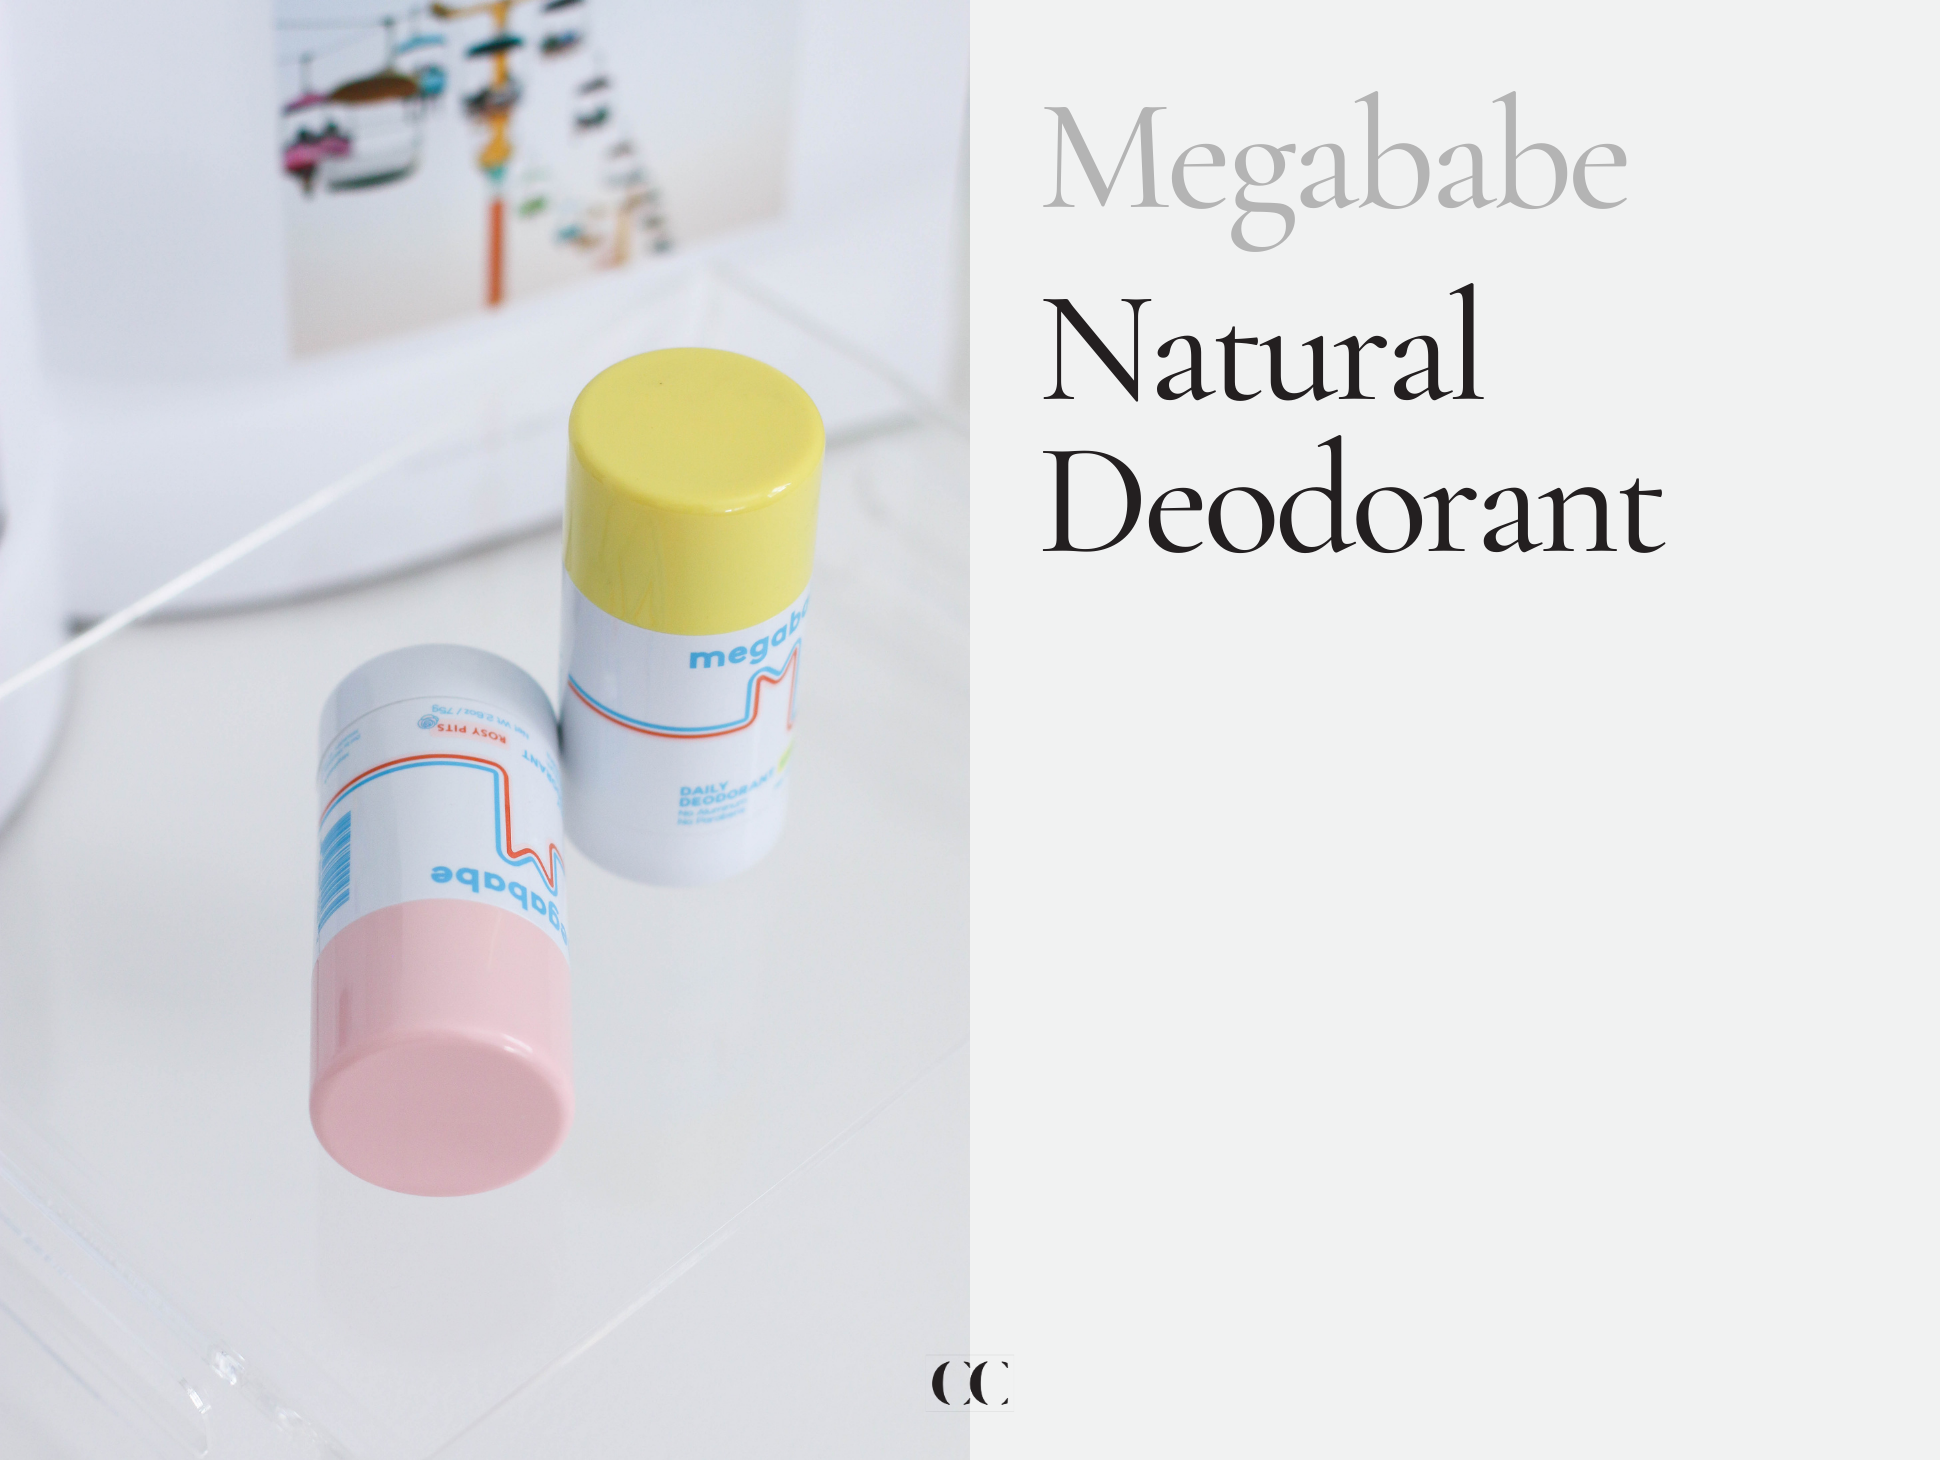 Megababe Natural Deodorant